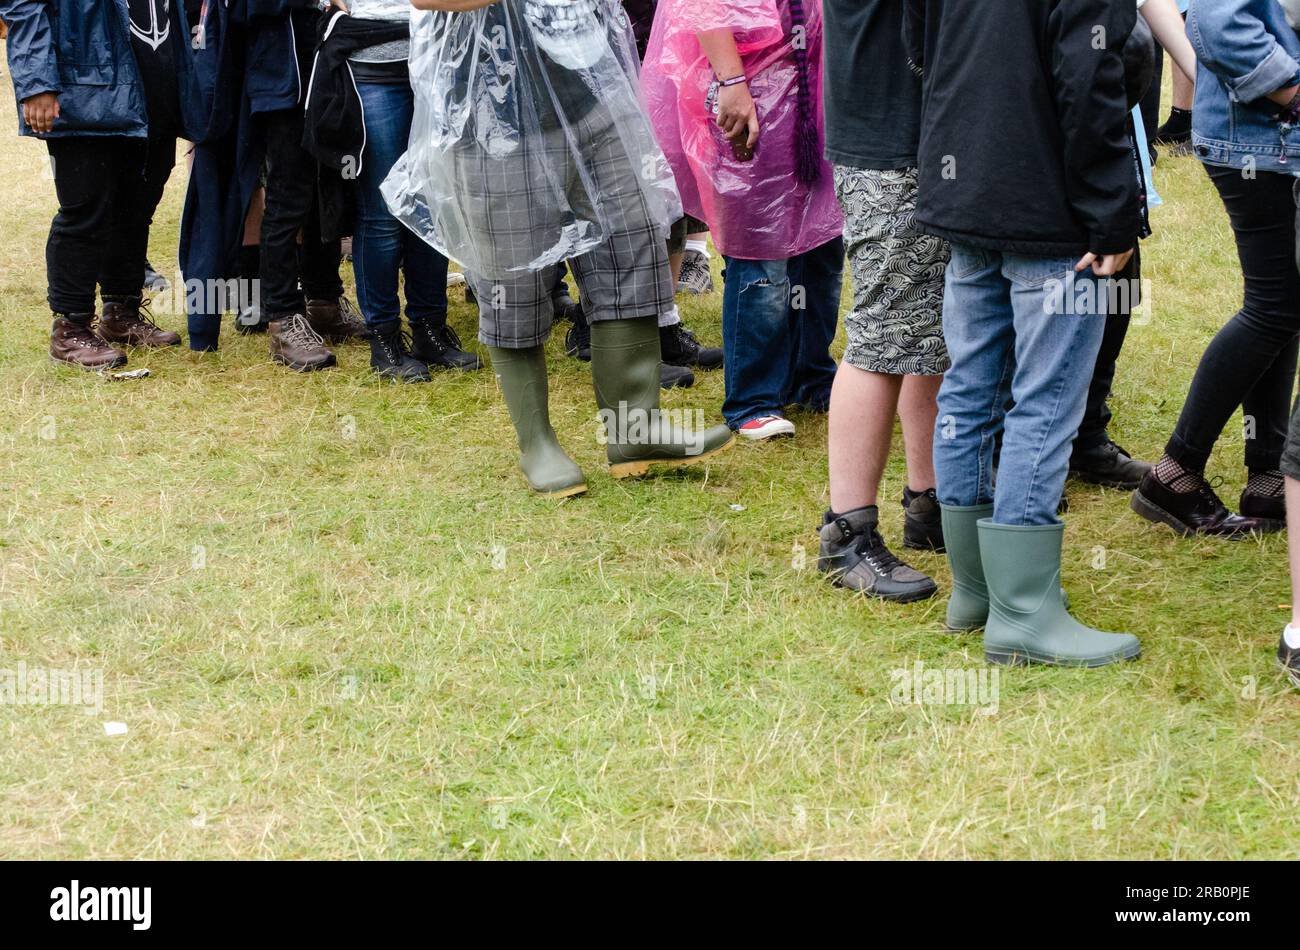 Les fans de rock font la queue au festival de rock Sonisphere à Knebworth, Hertfordshire, Royaume-Uni. Événement extérieur par temps humide. L'été humide Banque D'Images